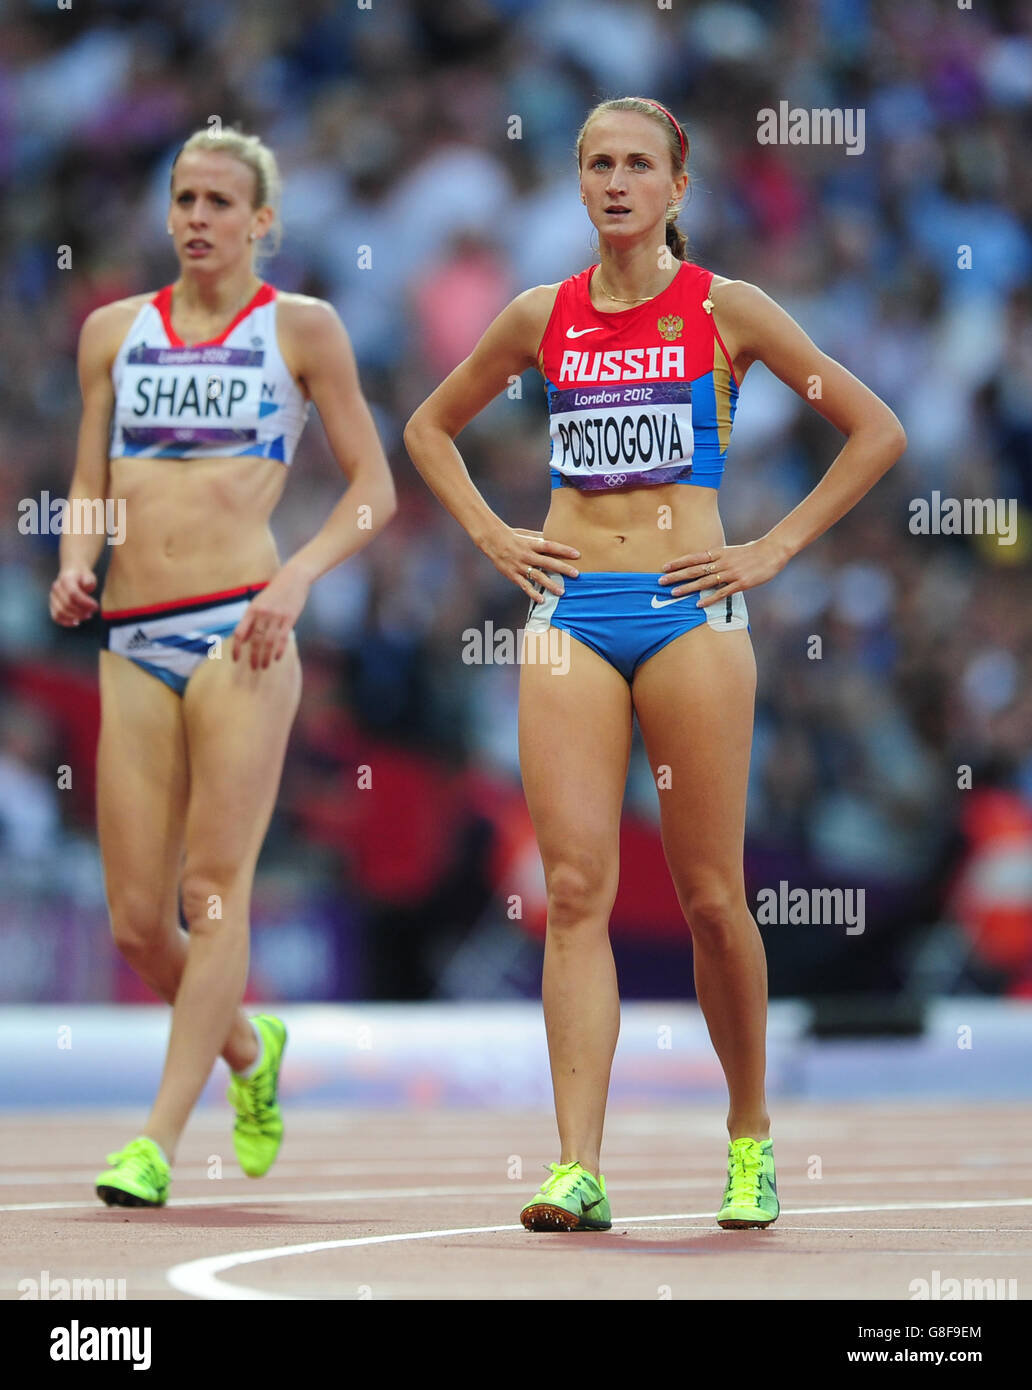 La Russia Ekaterina Poistogova compete nella Semifinale 2 femminile da 800 m durante il tredici° giorno delle Olimpiadi di Londra del 2012. Foto Stock